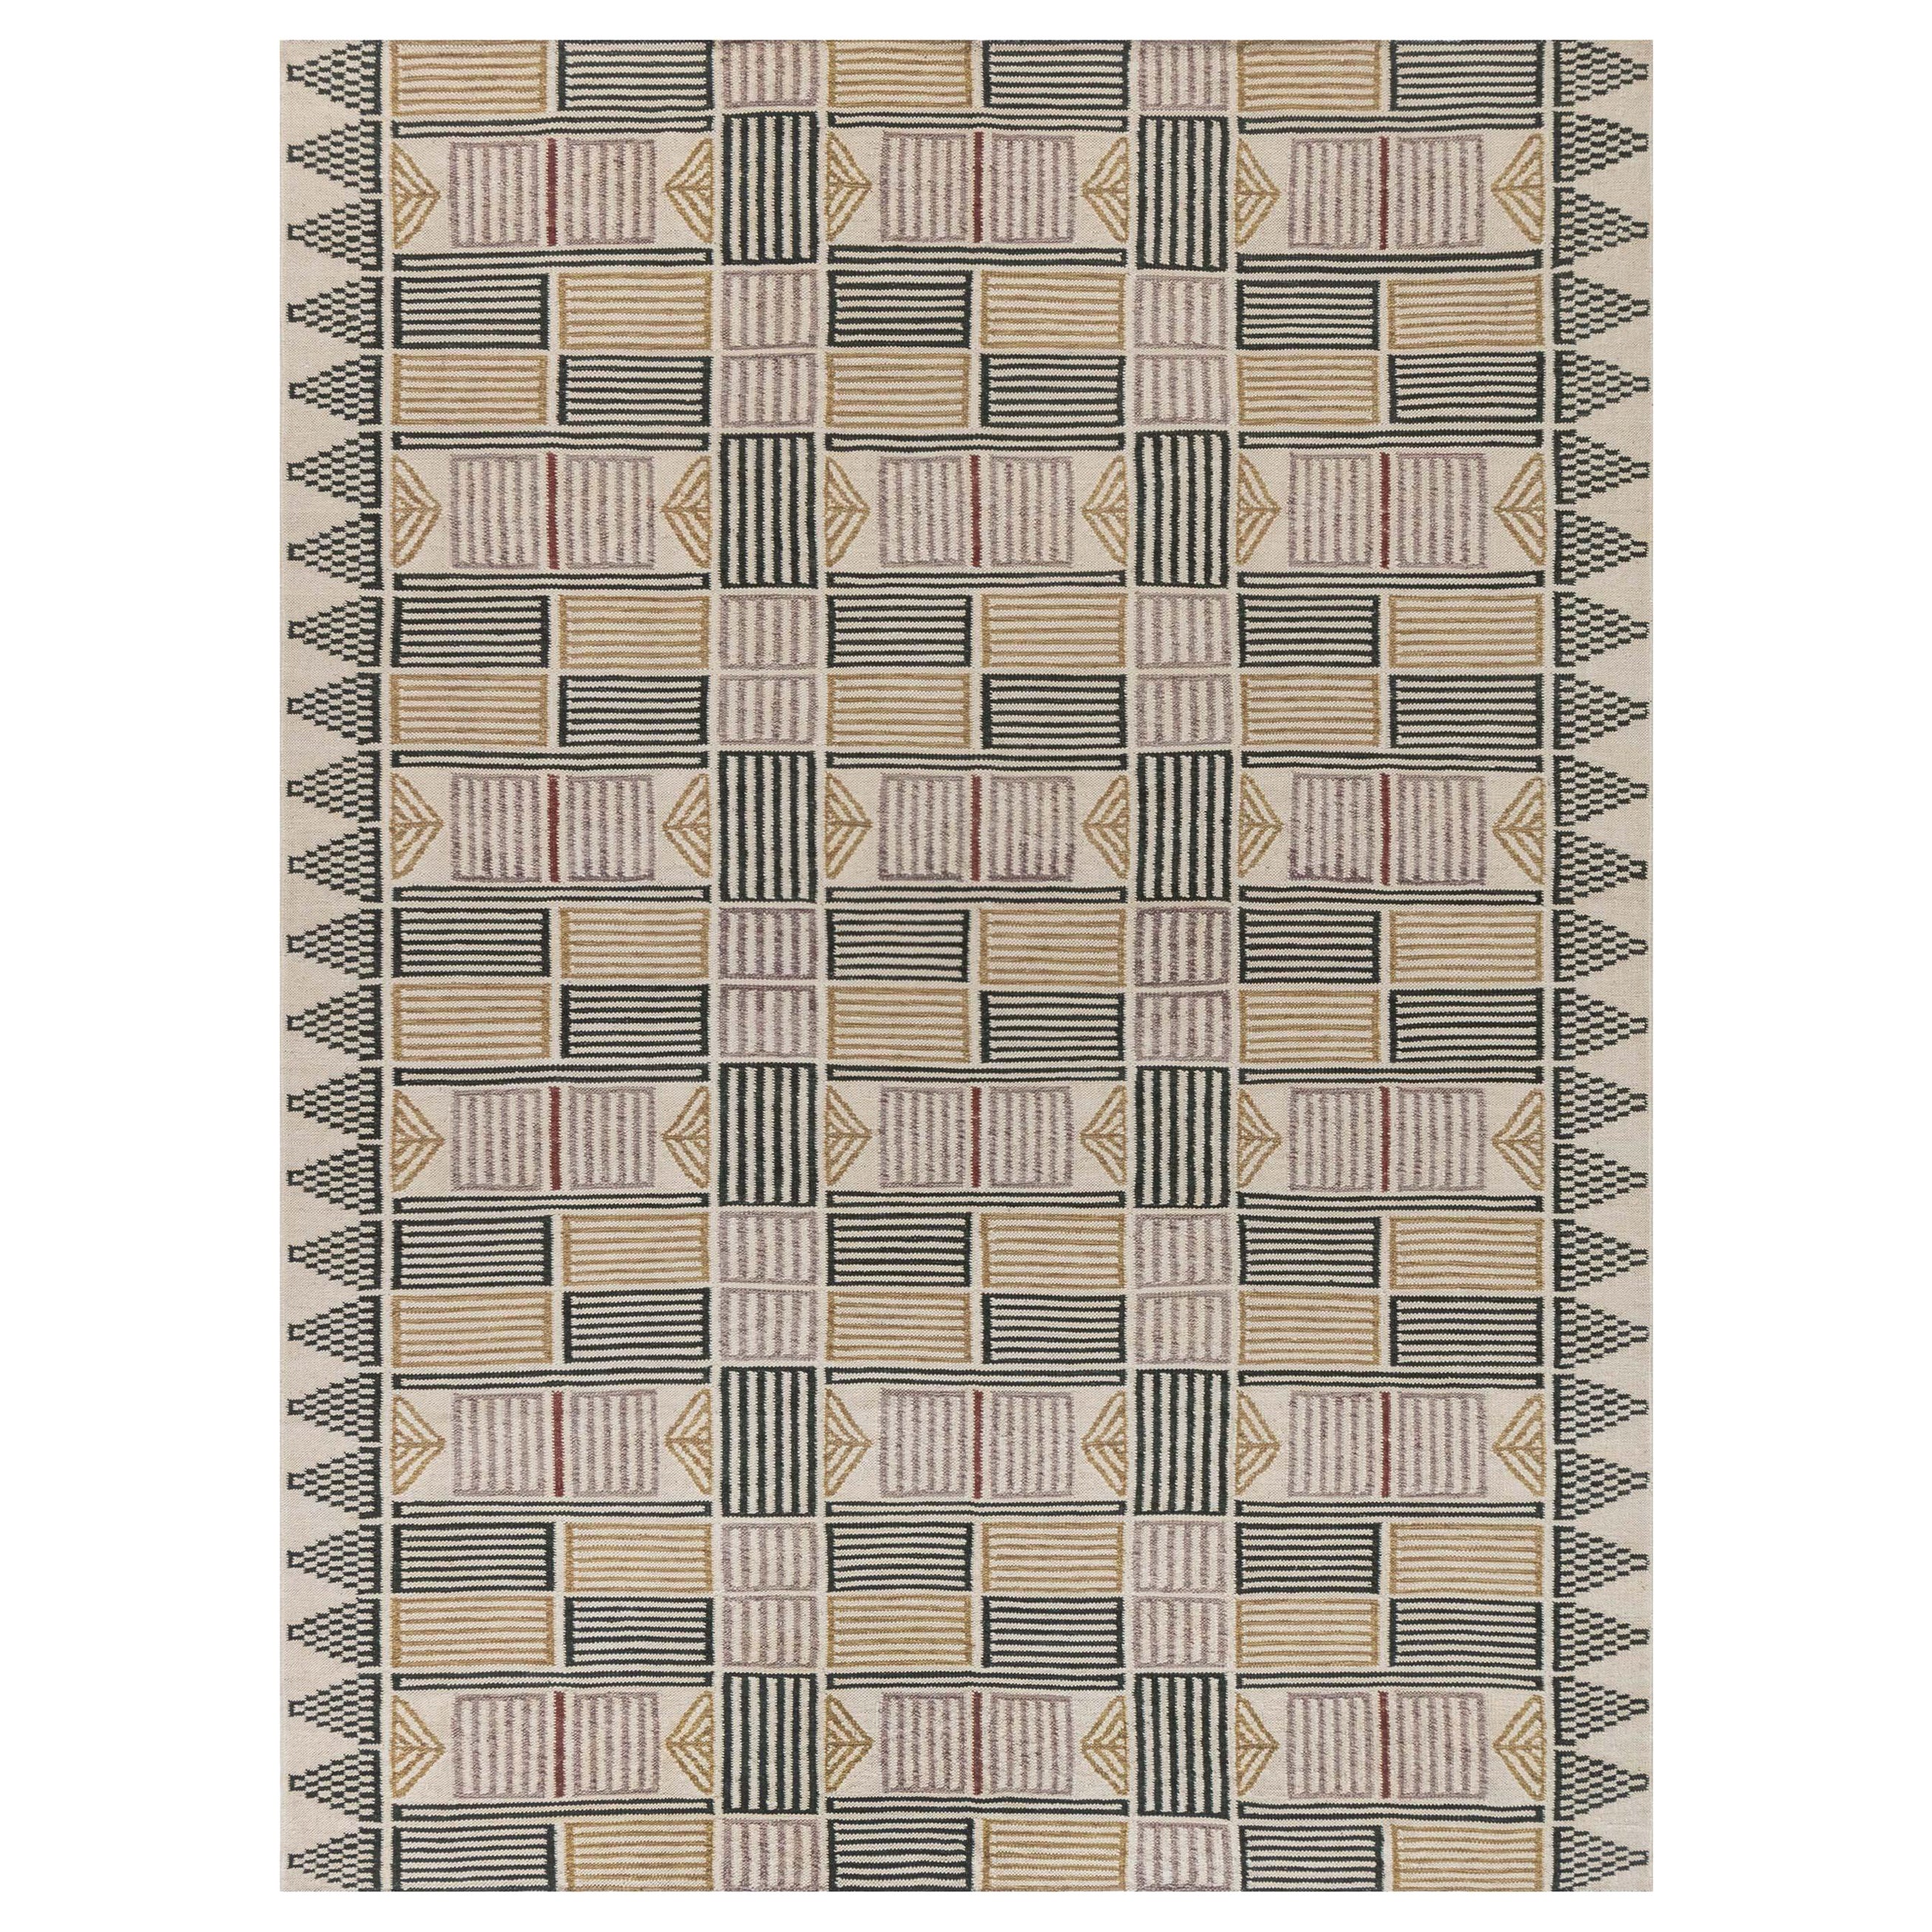 Moderner schwedischer Teppich von Doris Leslie Blau